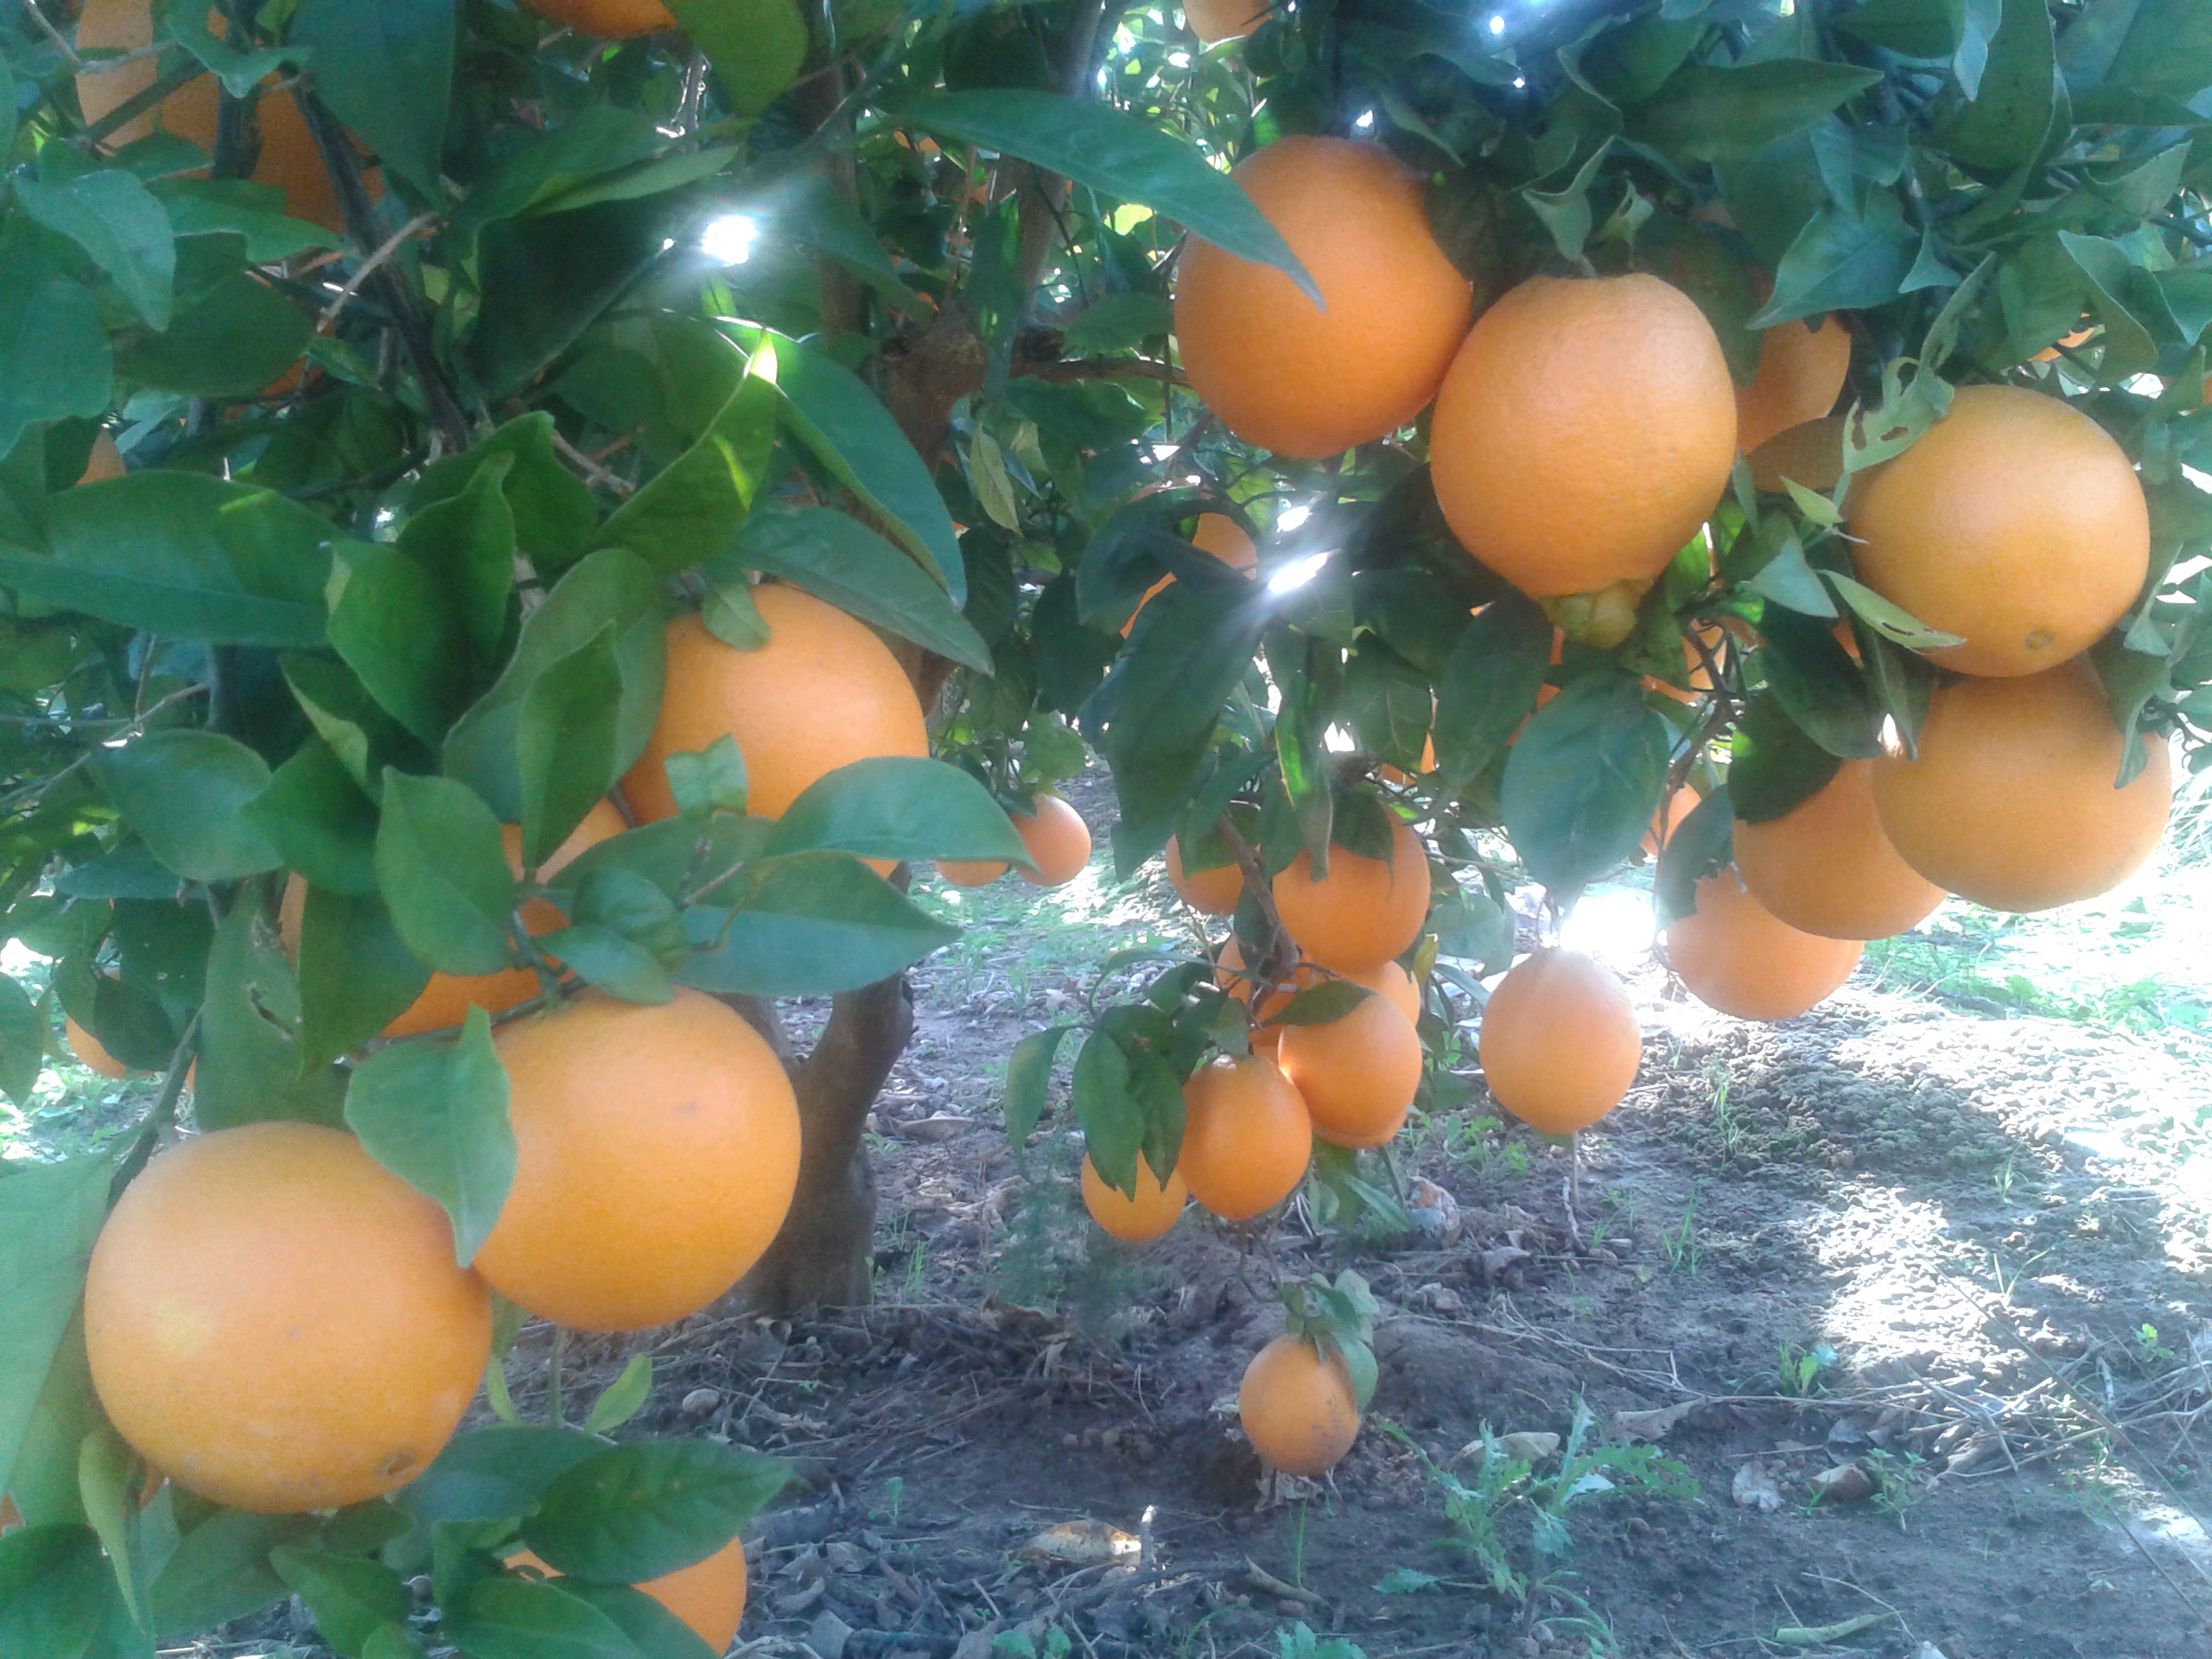 https://www.agroboca.com/productor/naranjas-fruits-del-mas/venta-al-mayor/naranjas-navelinas-valencianas-de-mesa-caja-de-10-kg